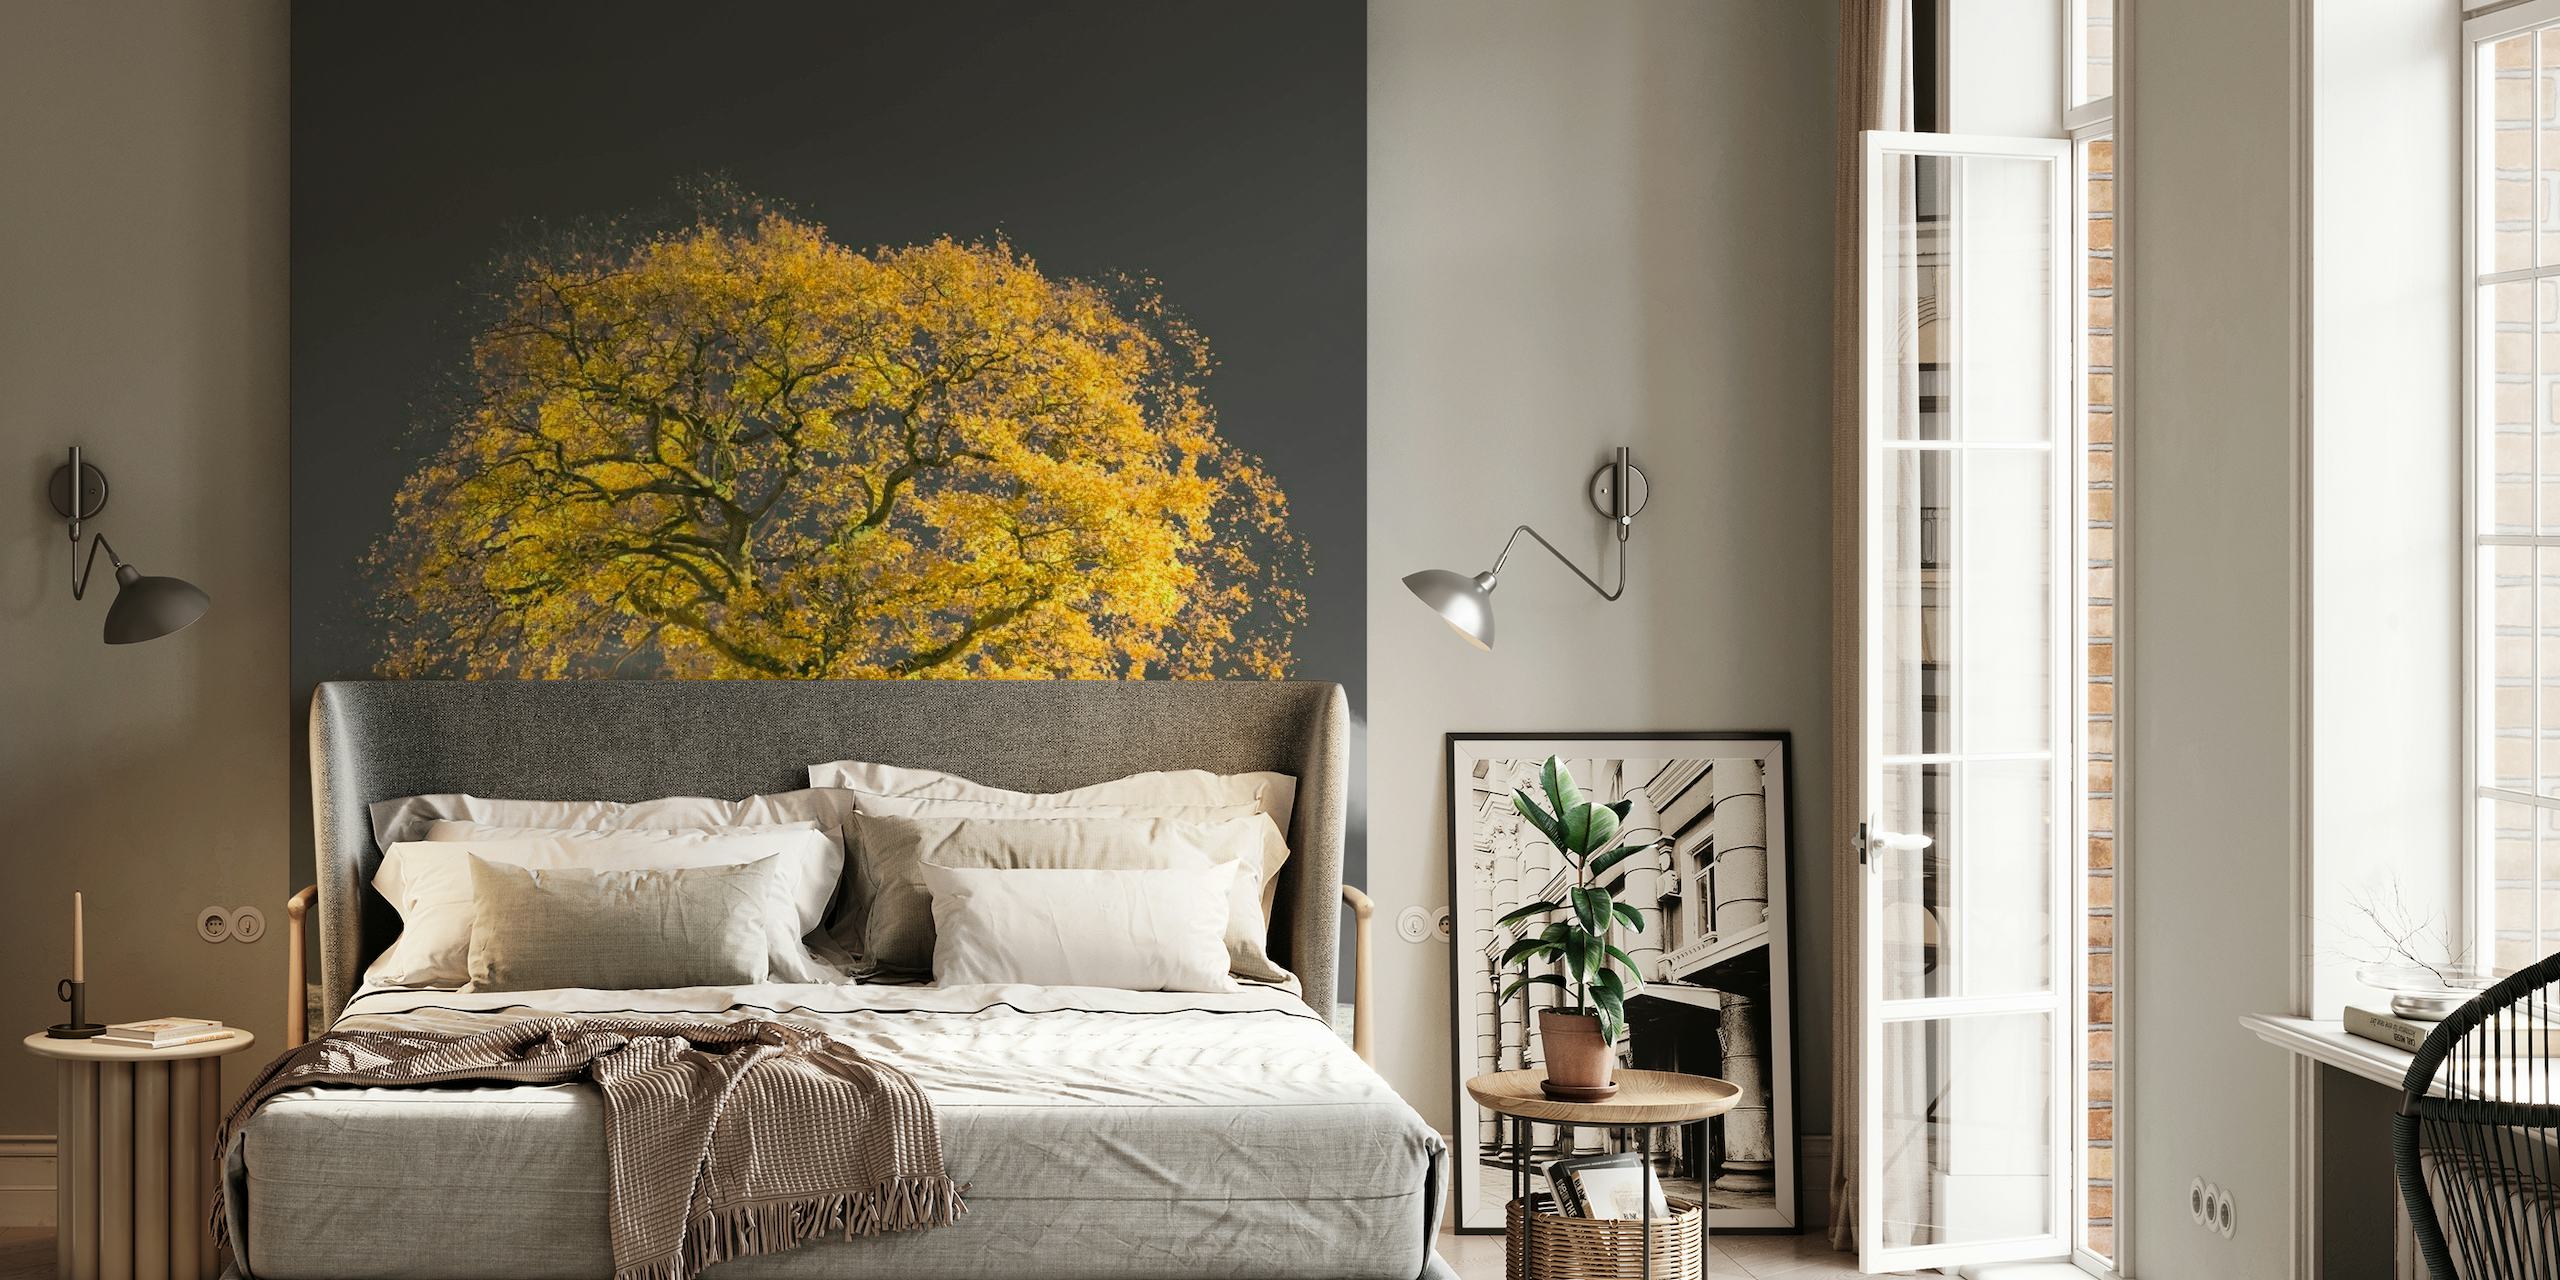 Et majestetisk gyllent tre mot et svart-hvitt landskapsmaleri